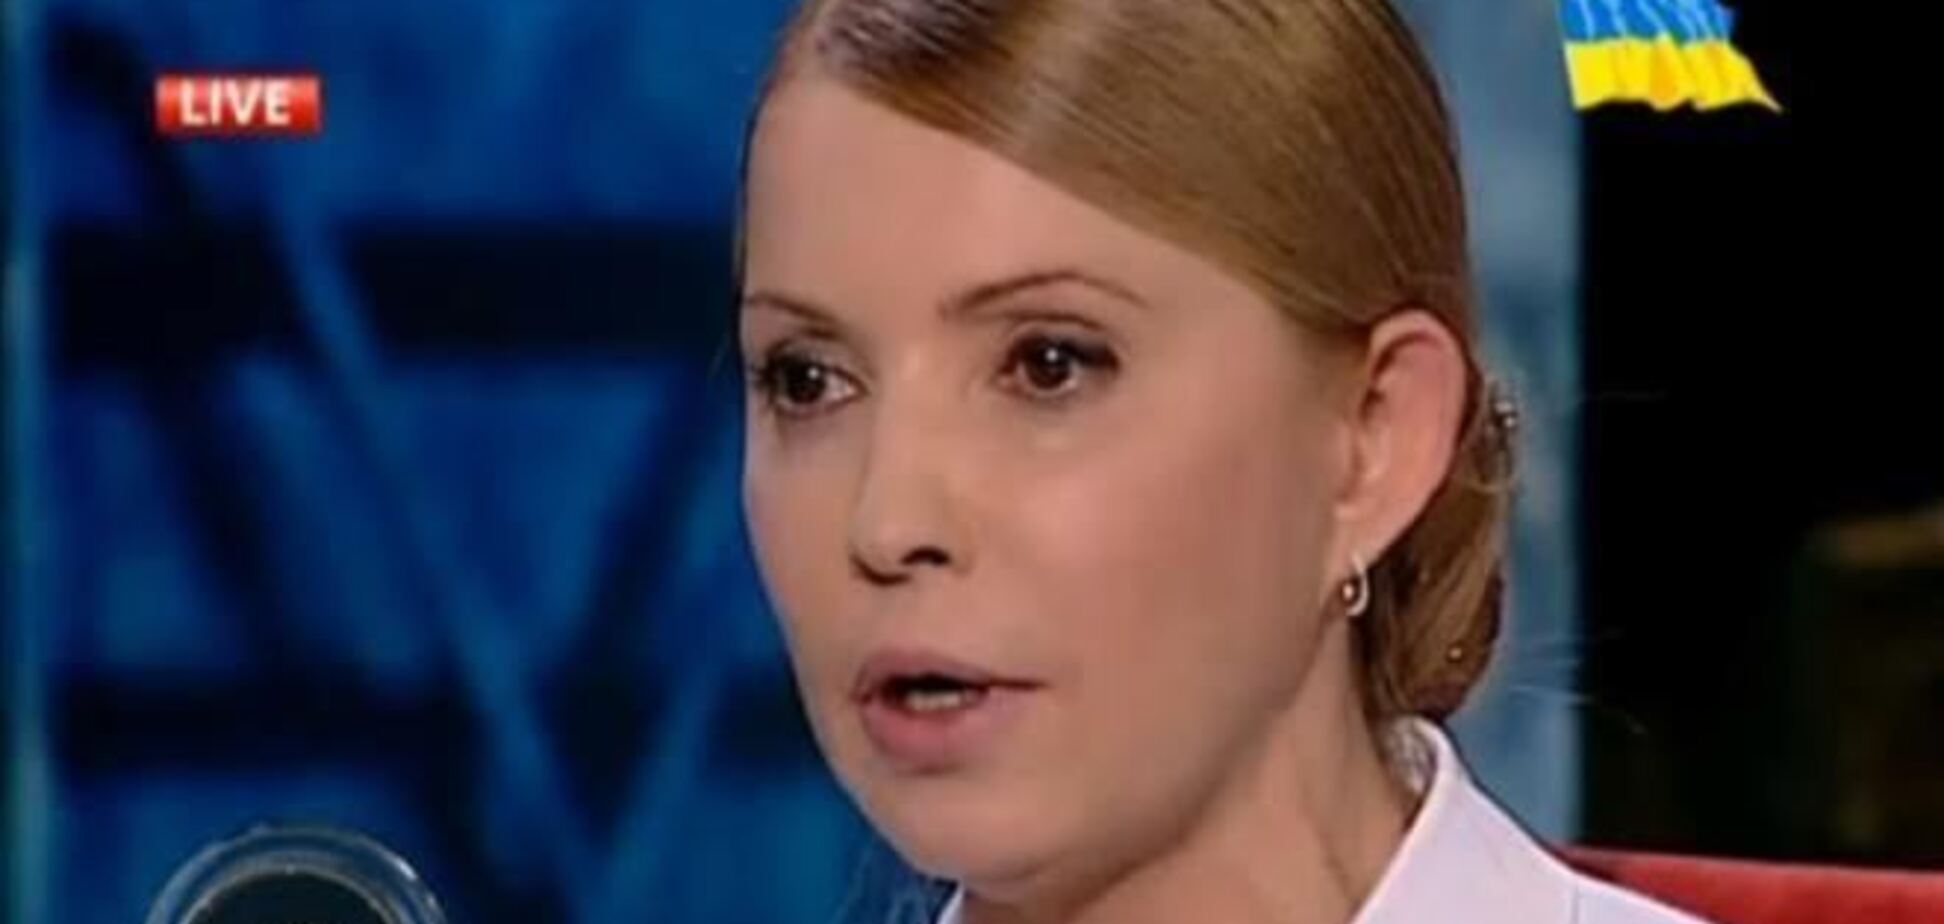 Лещенко уверен, что Тимошенко не могла понять его неправильно